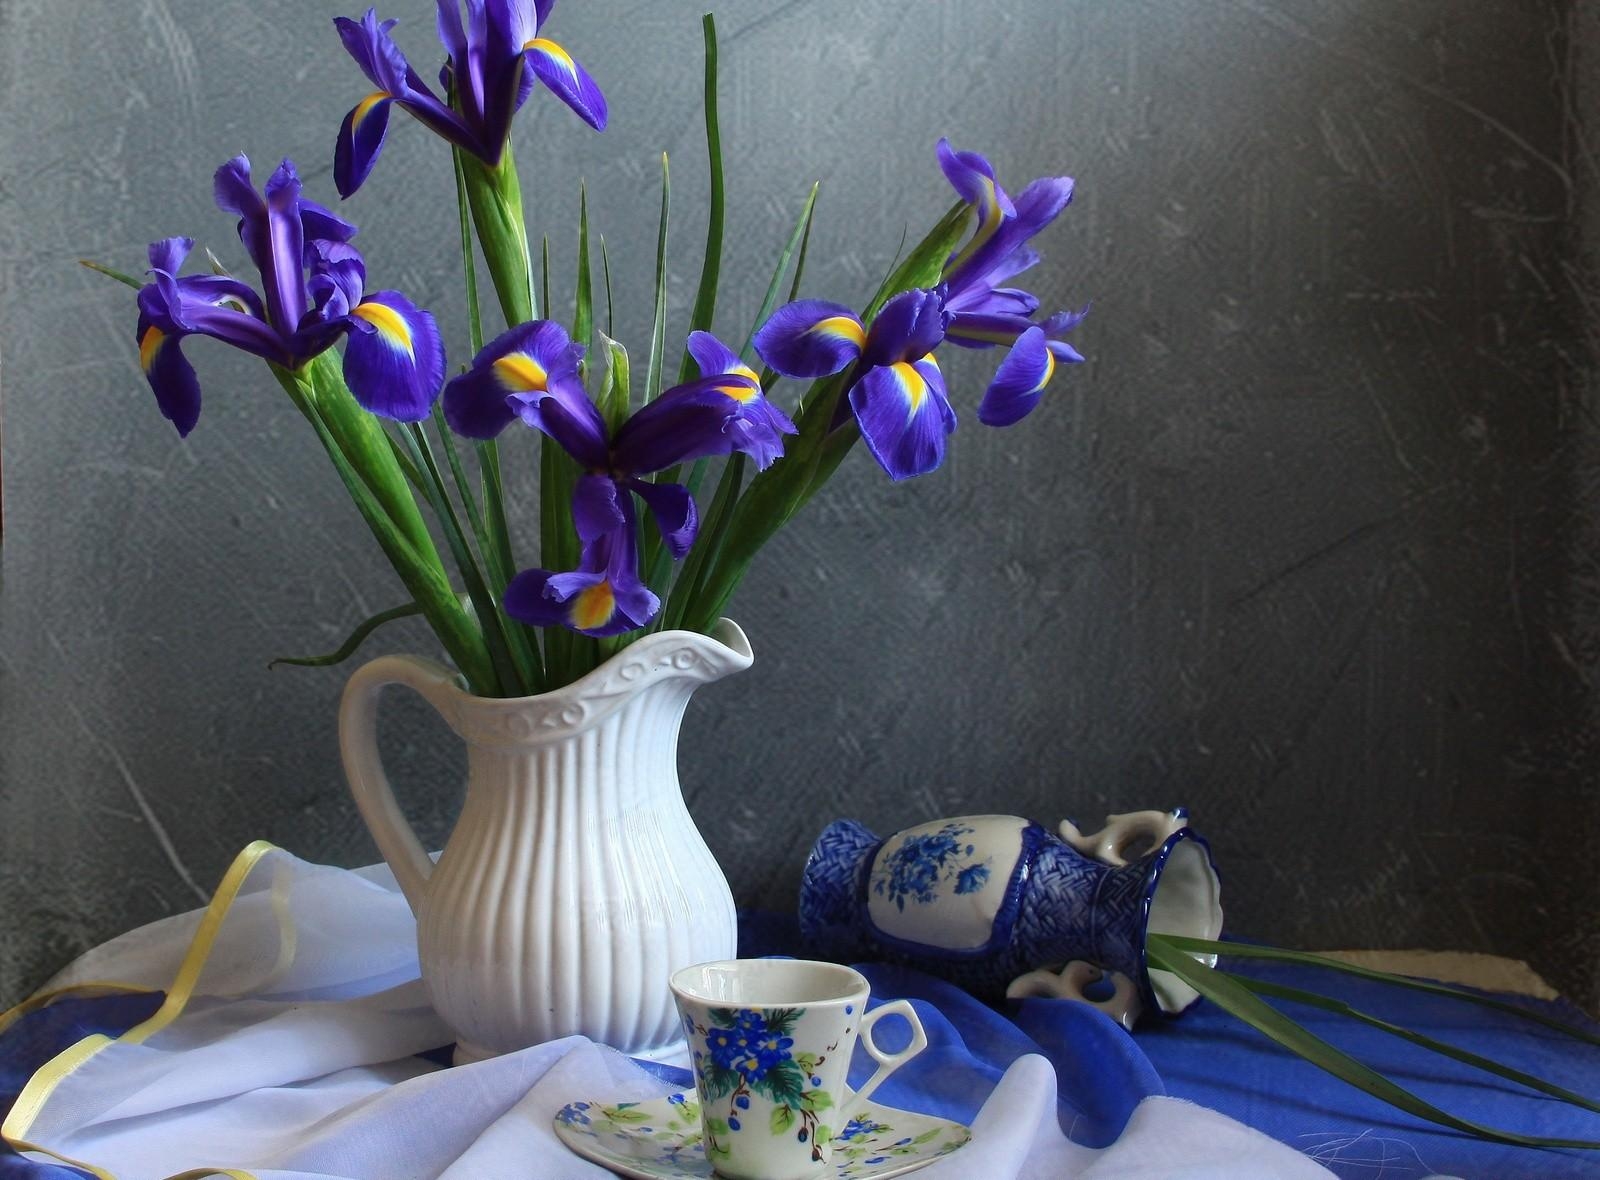 tea pair, flowers, jug, irises, tablecloth